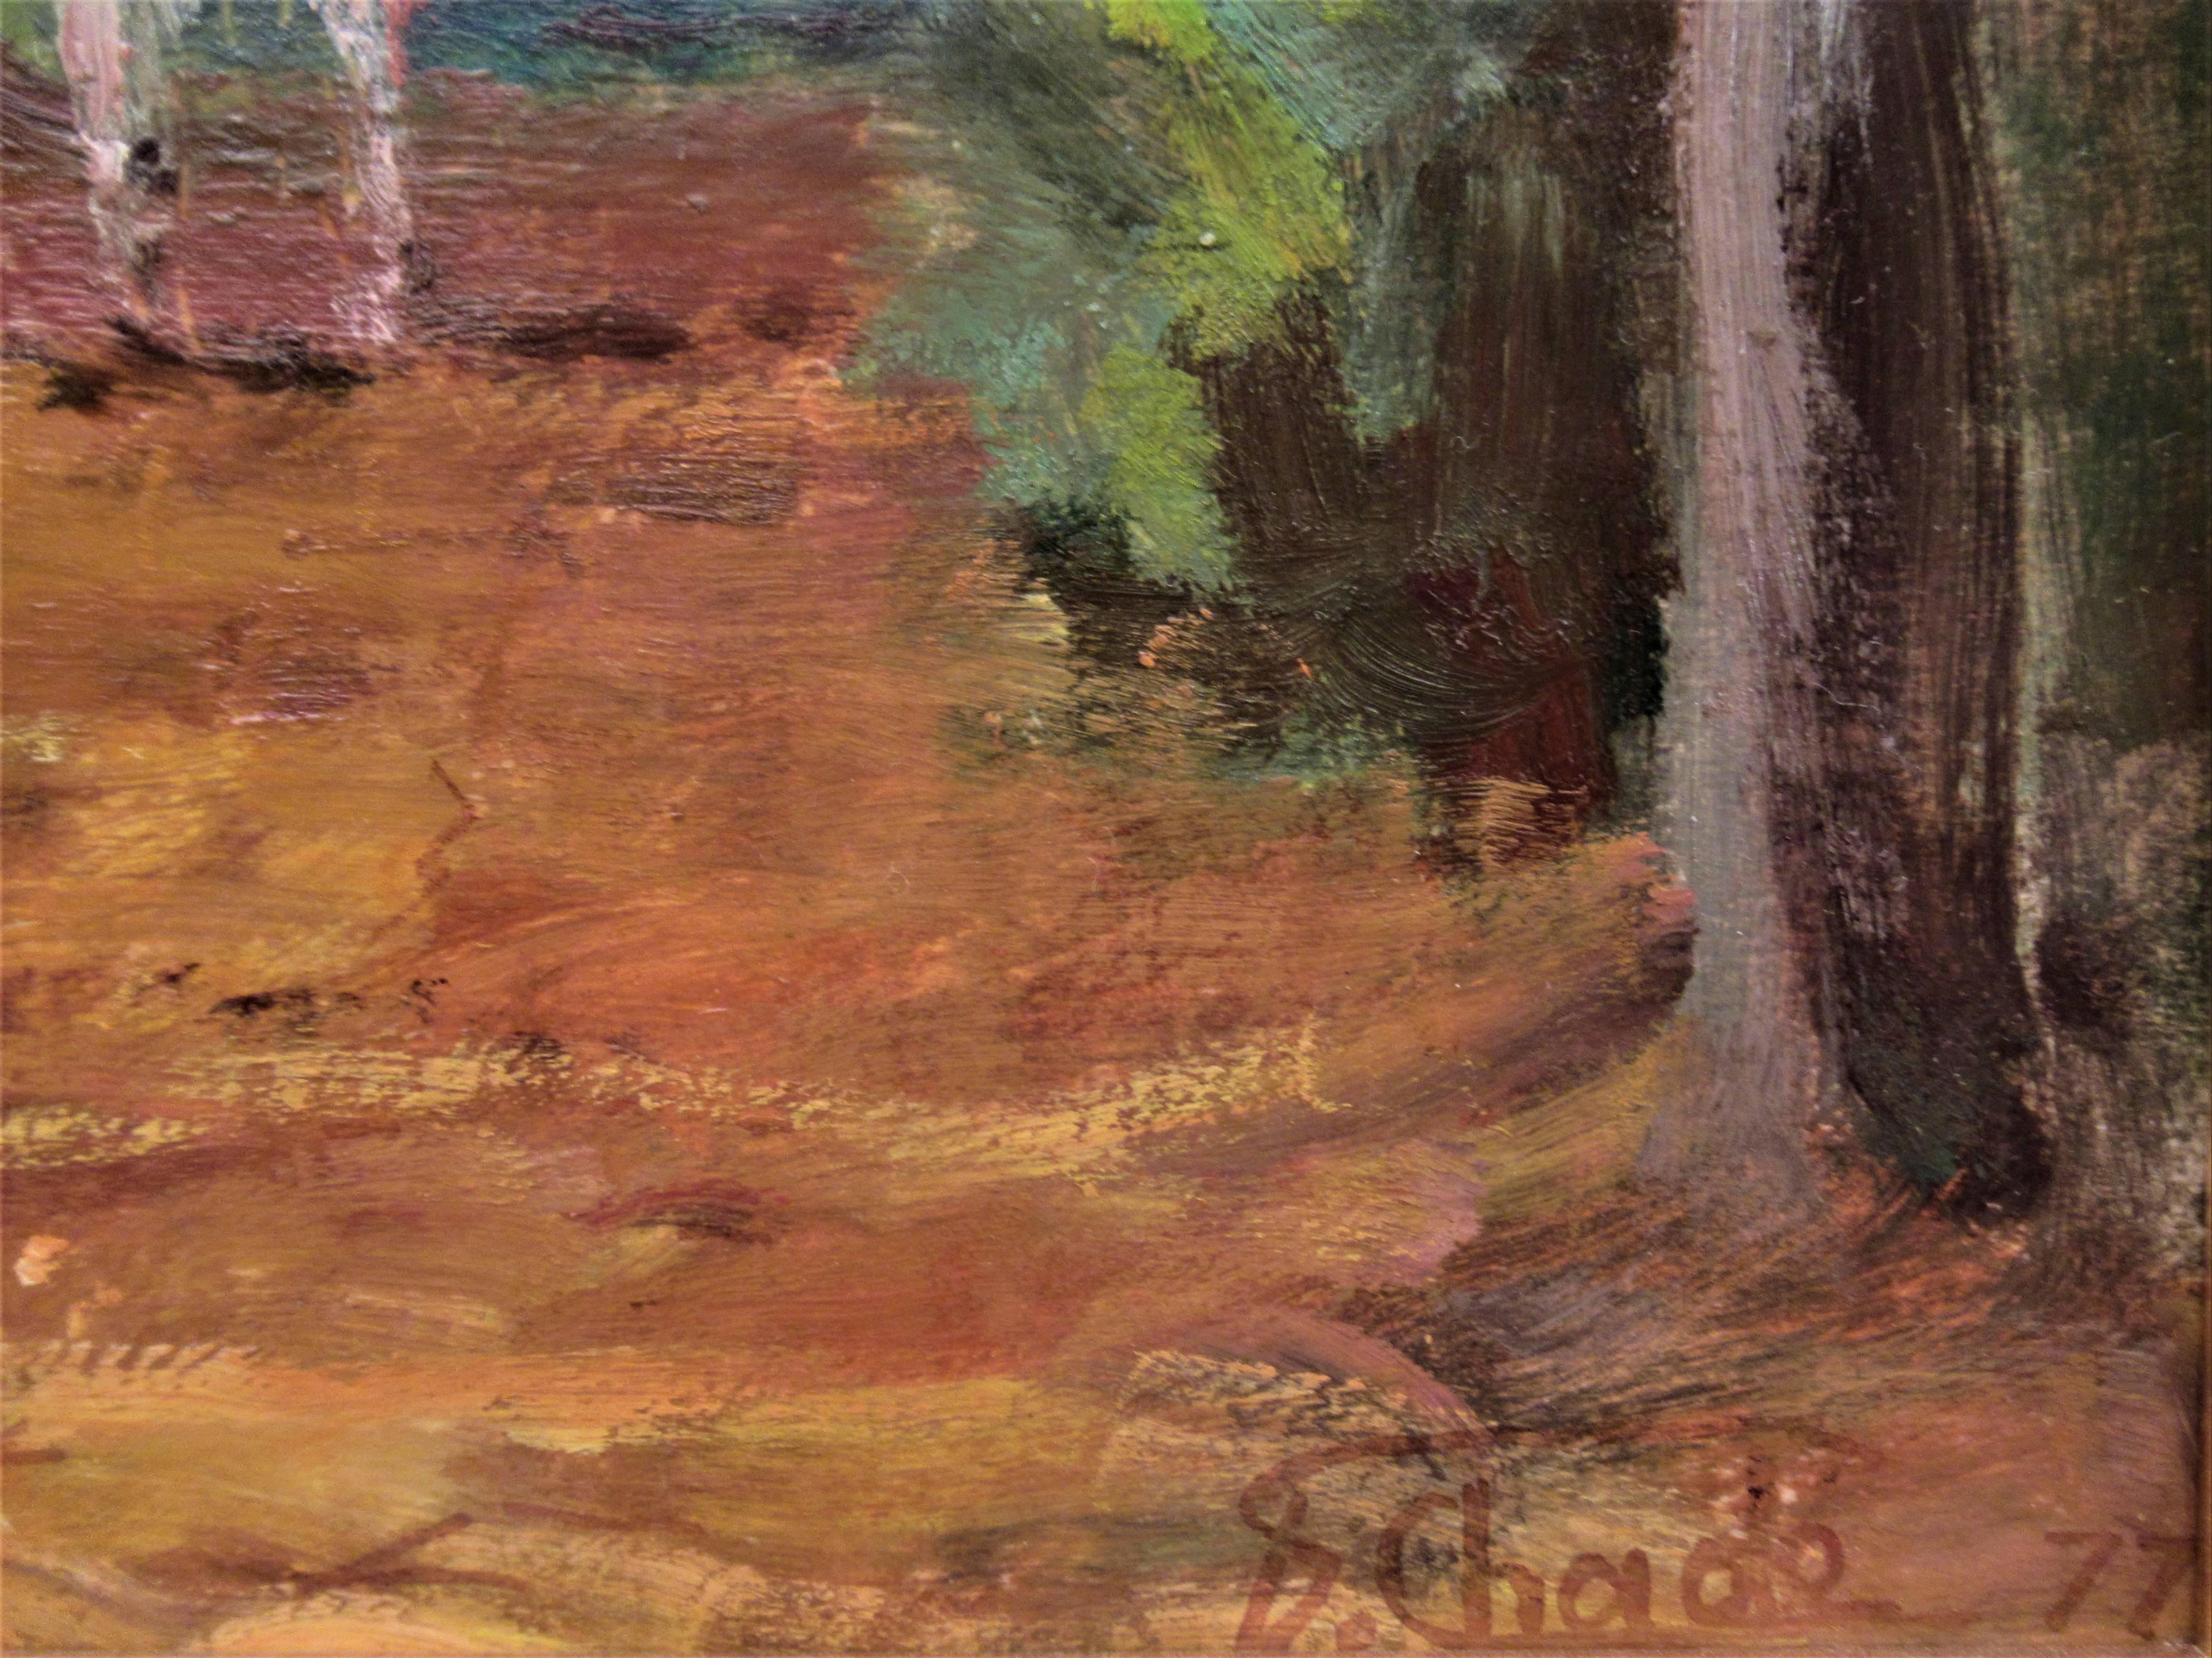 Promenade Dans les Bois - Brown Landscape Painting by Florent Chade